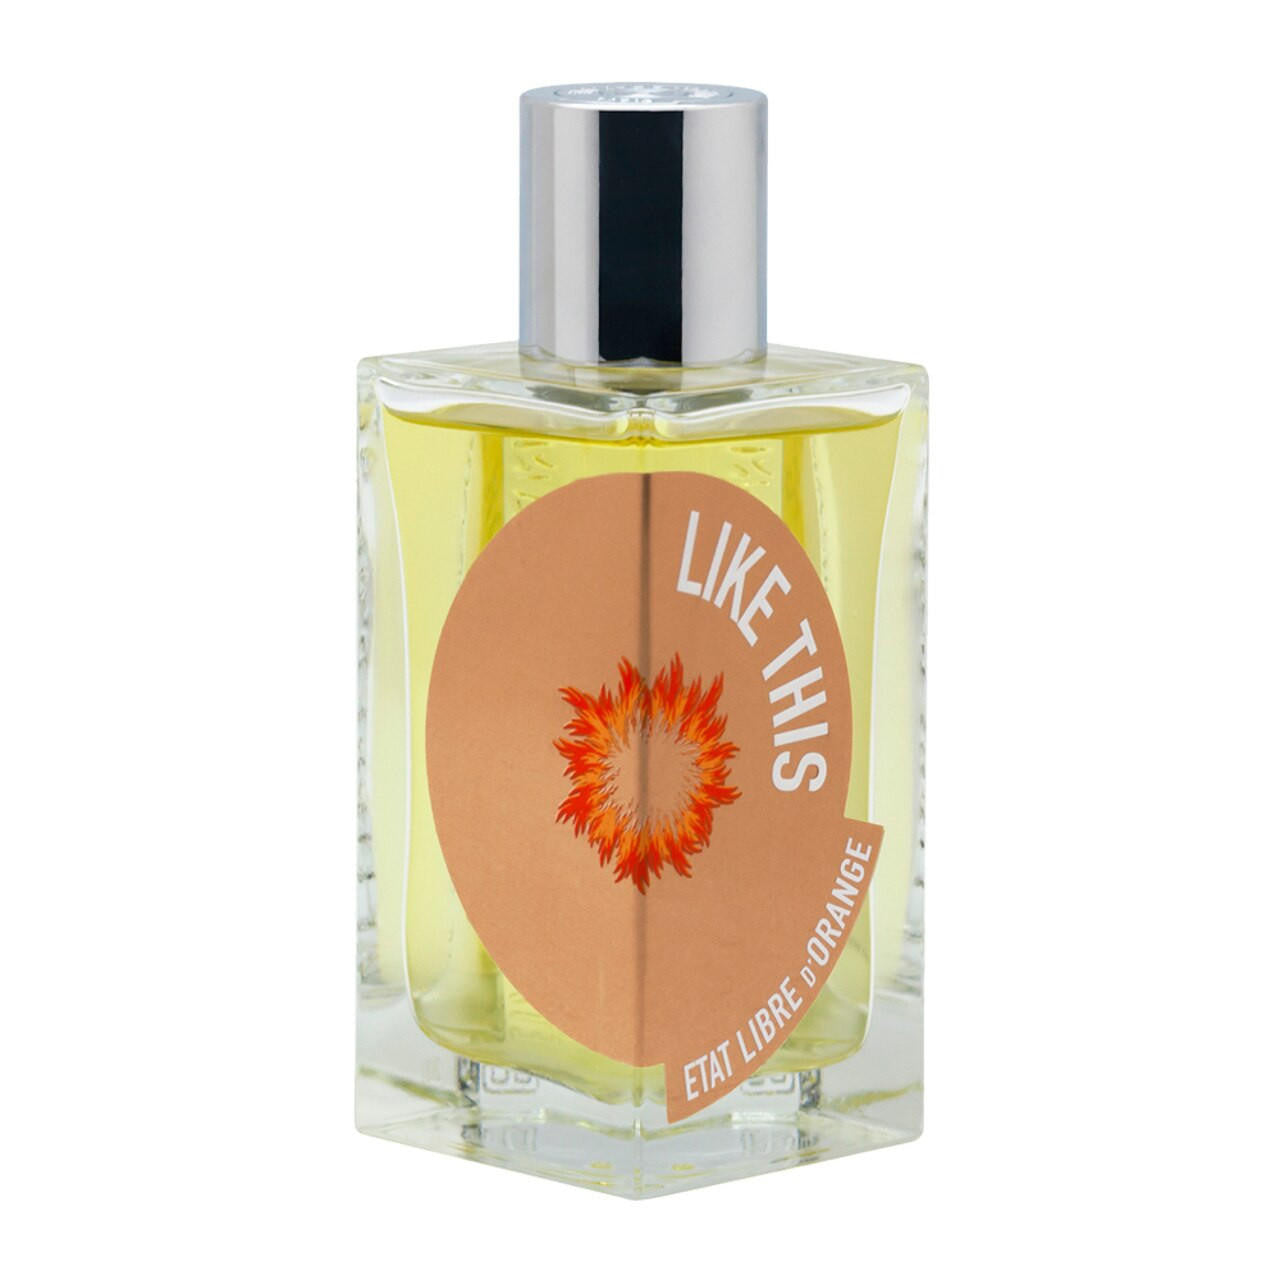  Etat Libre d'Orange LIKE THIS  TILDA SWINTON Eau de Parfum 